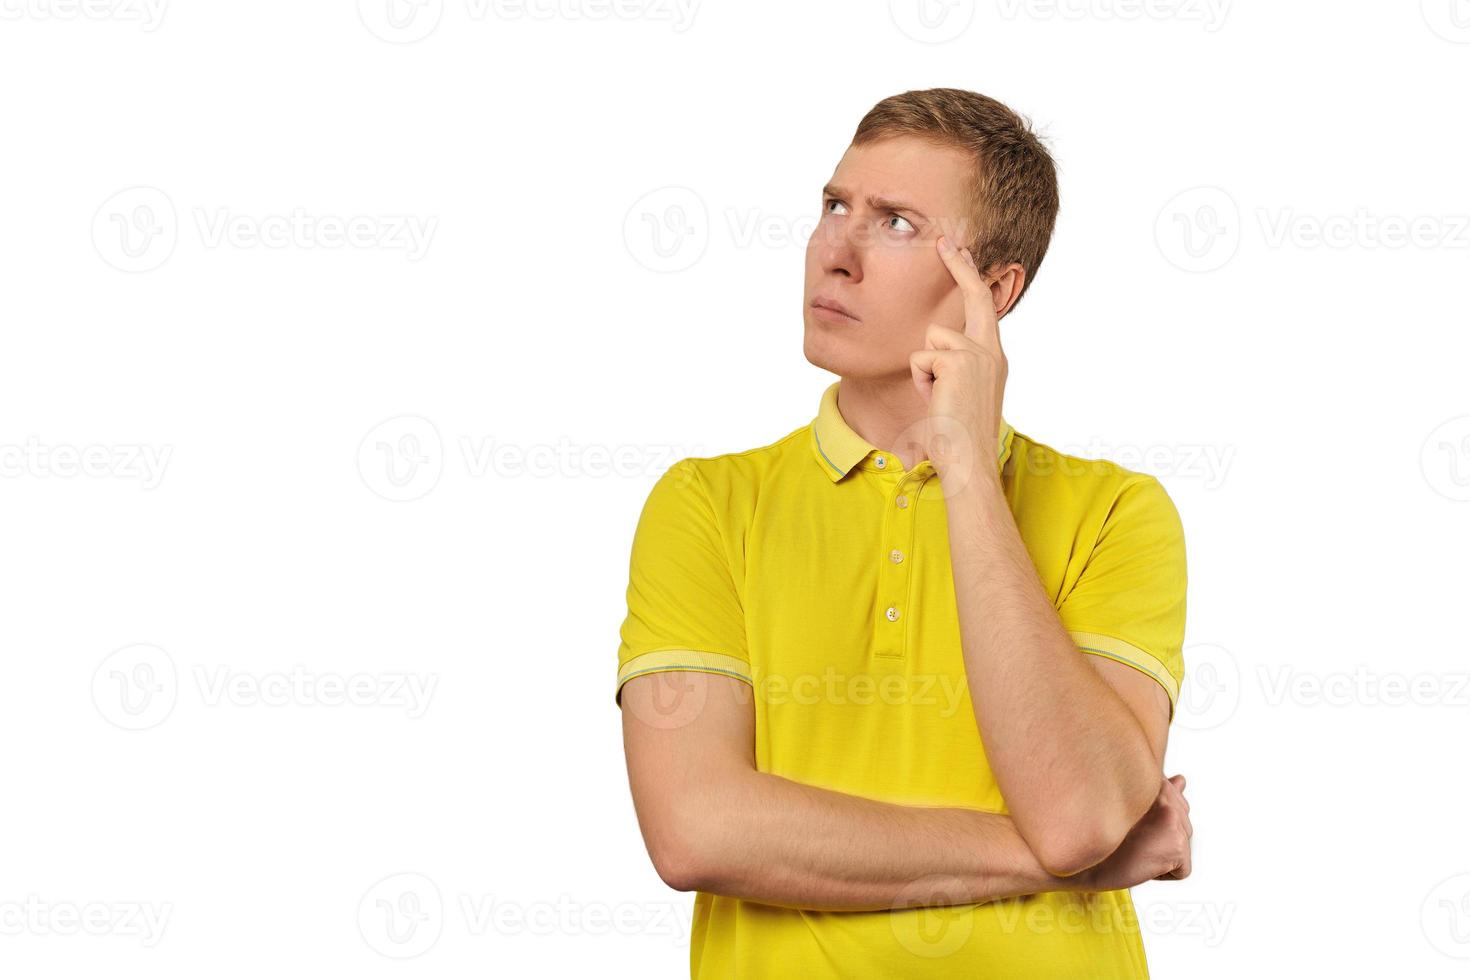 ragazzo premuroso in maglietta gialla che guarda a sinistra, sfondo bianco, riflessione filosofica foto